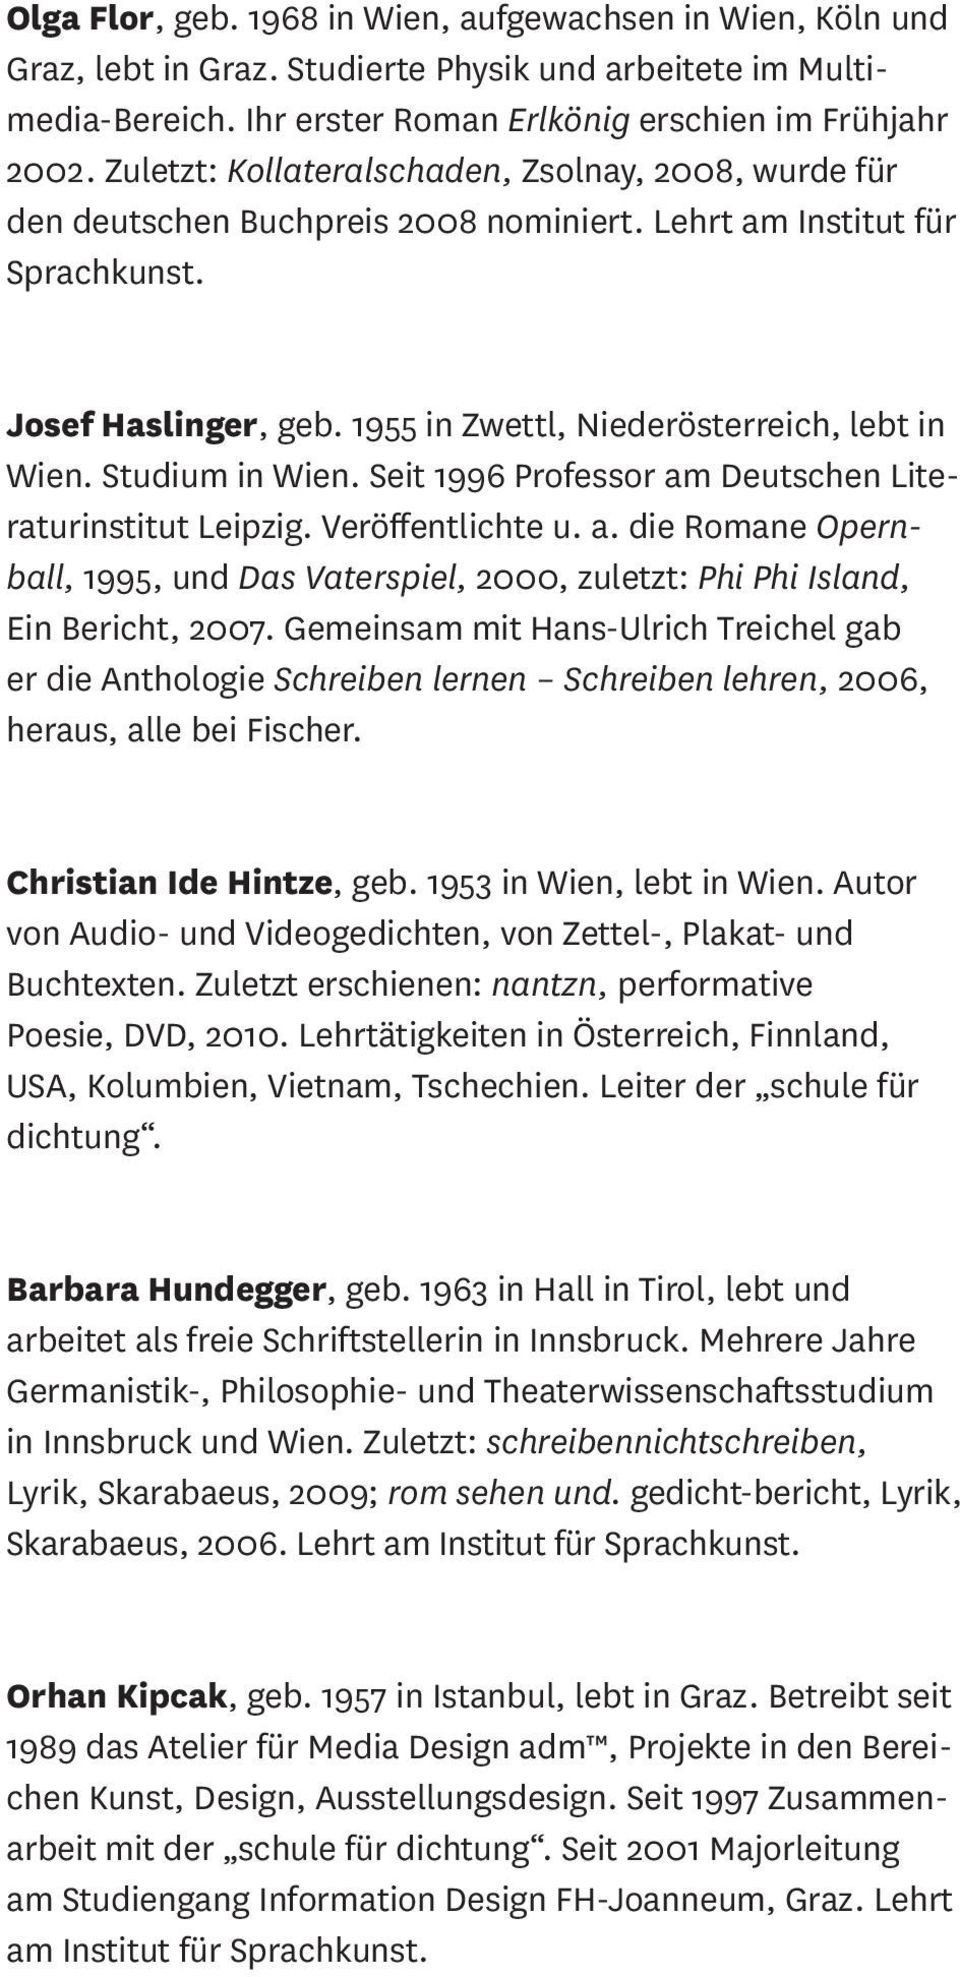 Studium in Wien. Seit 1996 Professor am Deutschen Literaturinstitut Leipzig. Veröffentlichte u. a. die Romane Opernball, 1995, und Das Vaterspiel, 2000, zuletzt: Phi Phi Island, Ein Bericht, 2007.